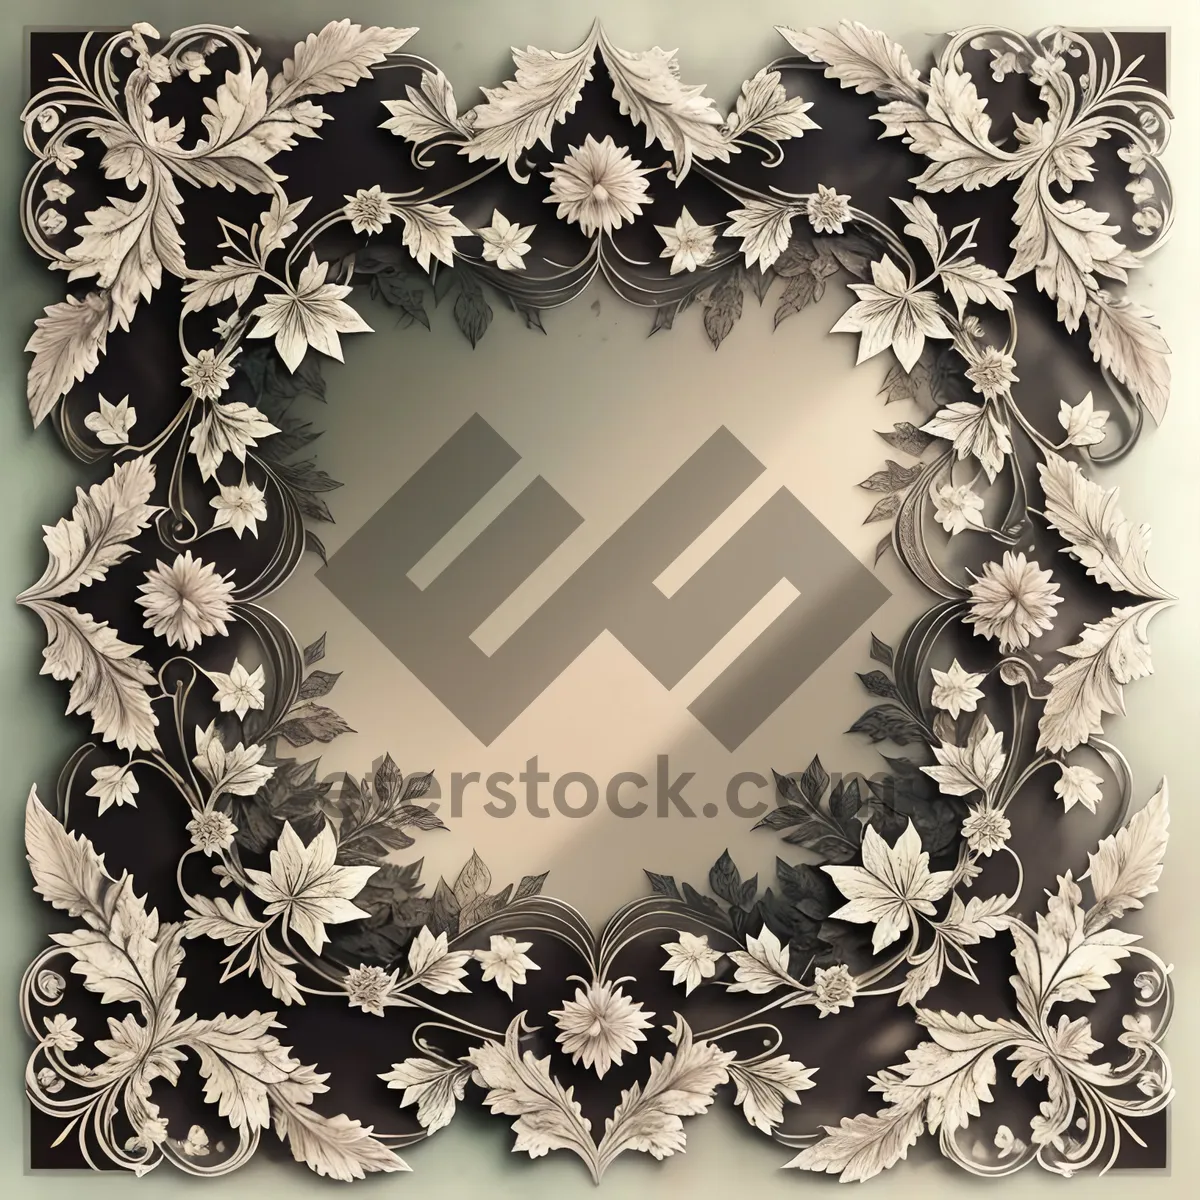 Picture of Vintage Floral Damask Ornate Decorative Wallpaper